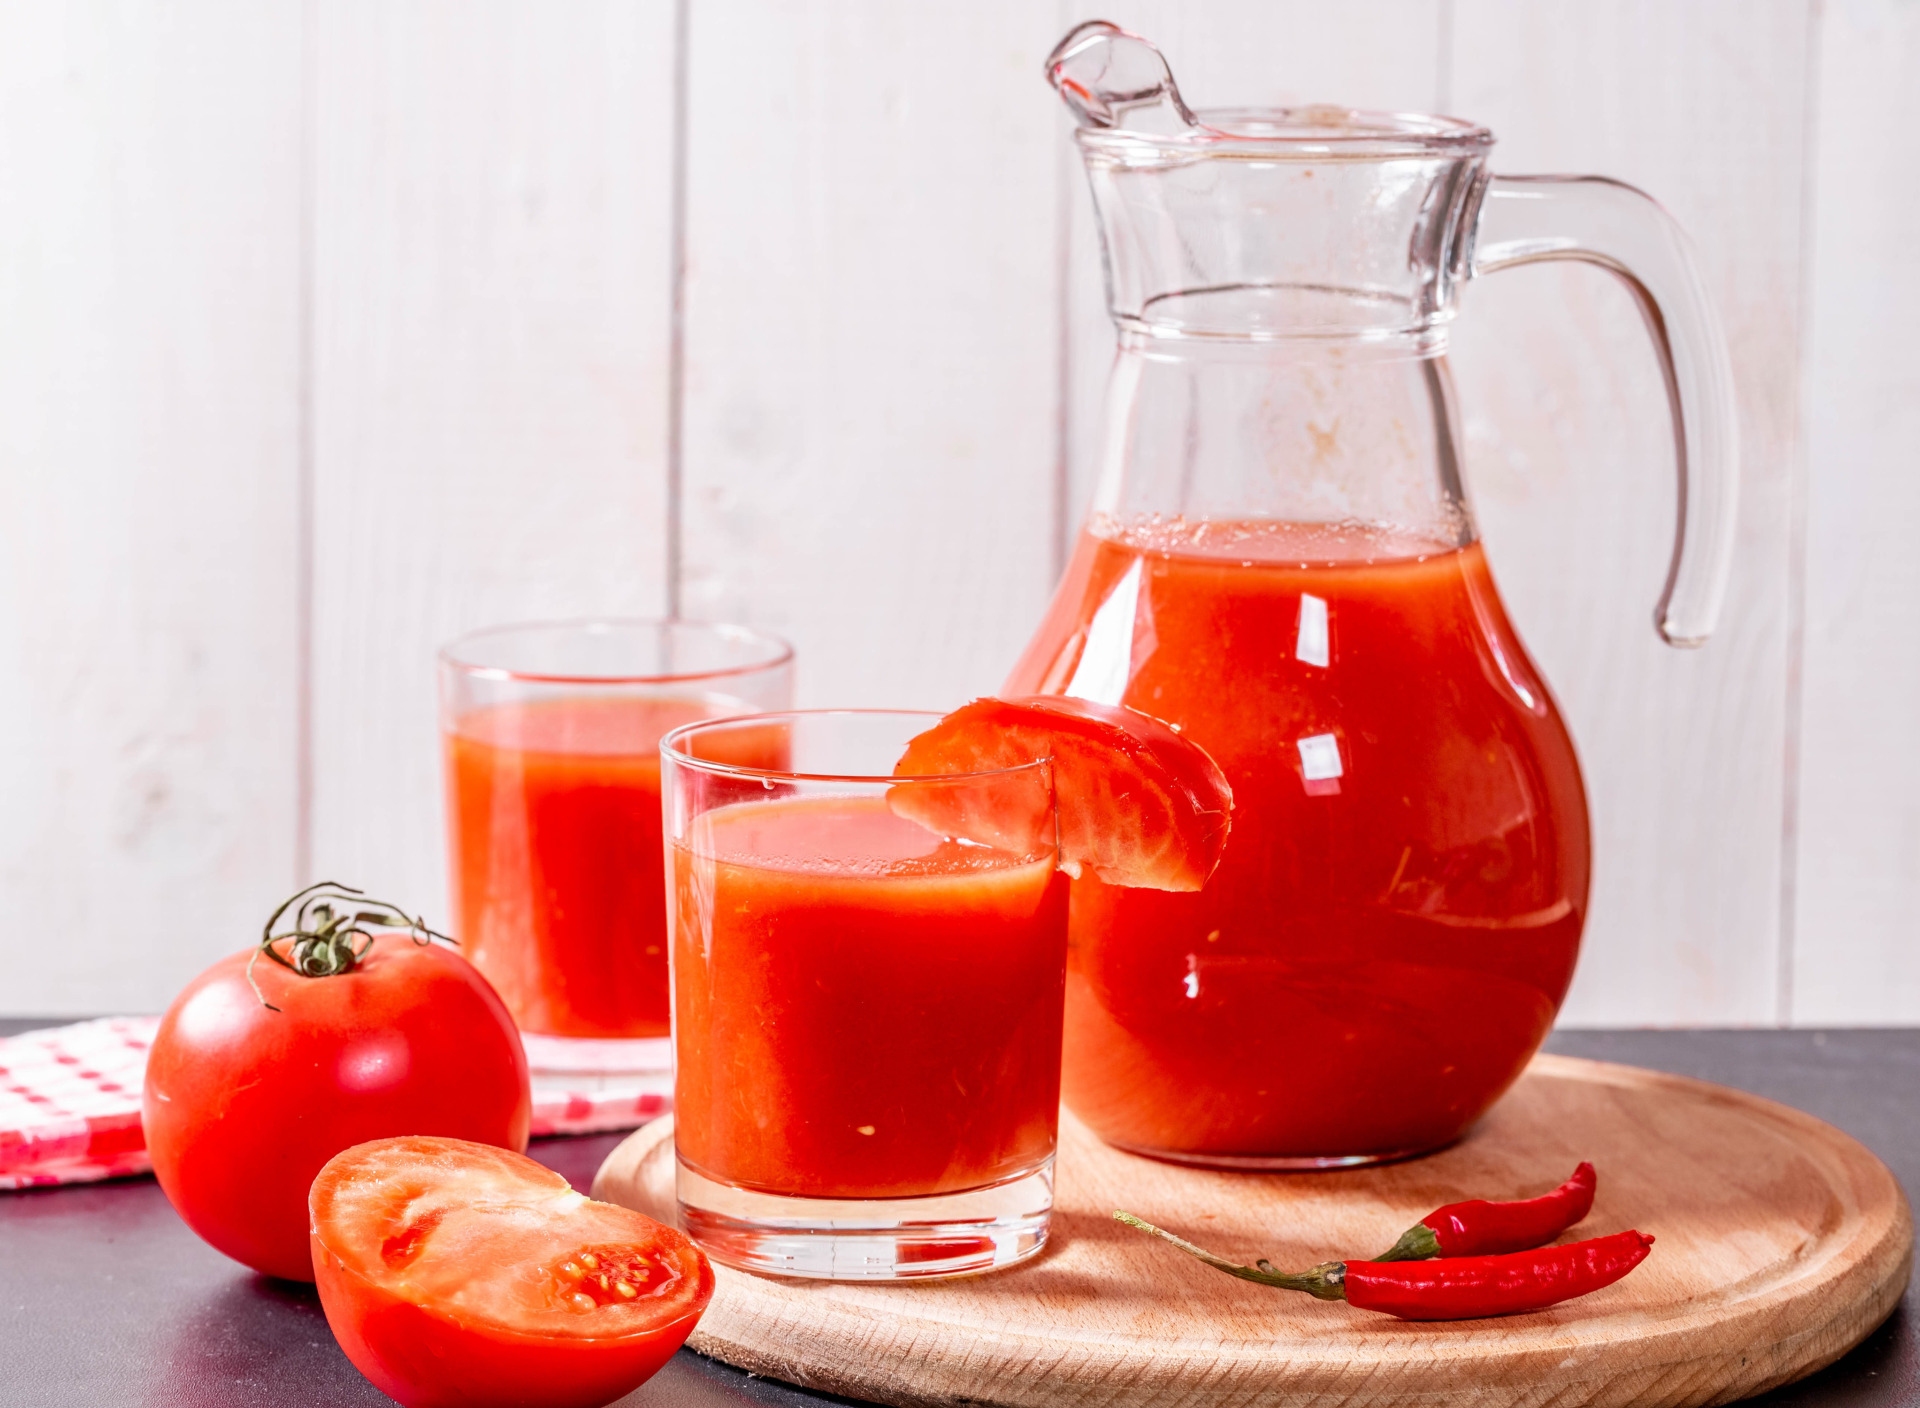 Сок помидоры самый вкусный рецепт. Томатный сок 7сэй. Графин для сока. Кувшин для сока. Графин с томатным соком.